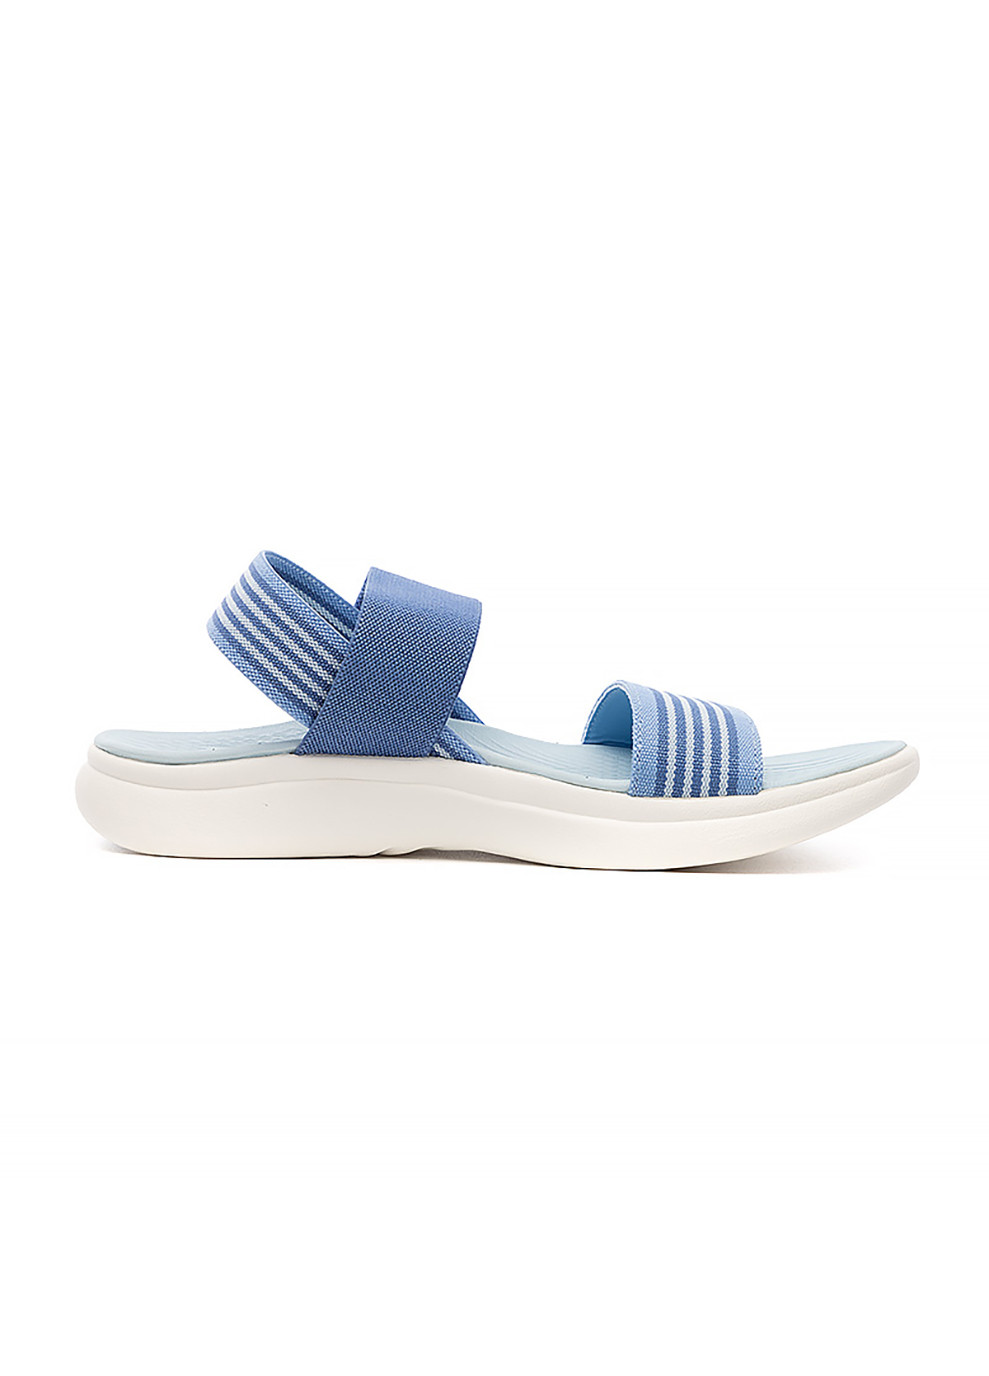 Спортивные женские сандали w risor sandal голубой Helly Hansen